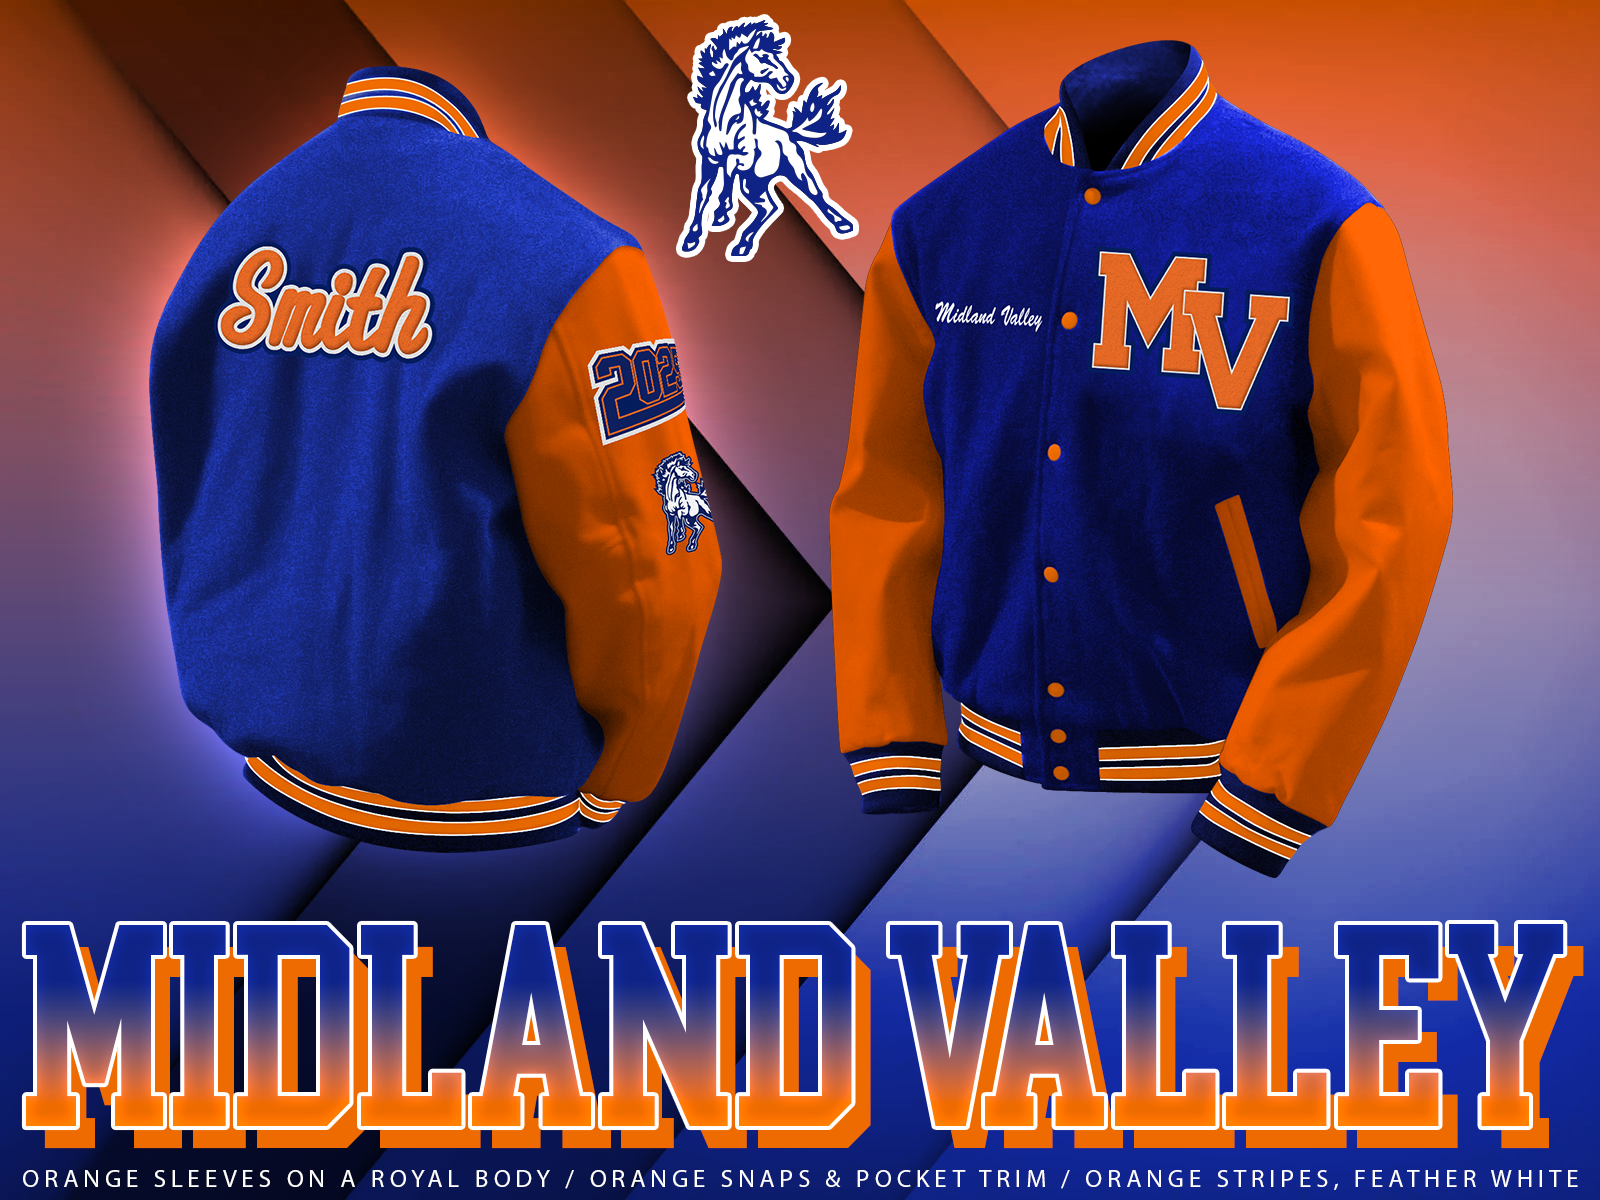 Midland Valley Letterman Jacket